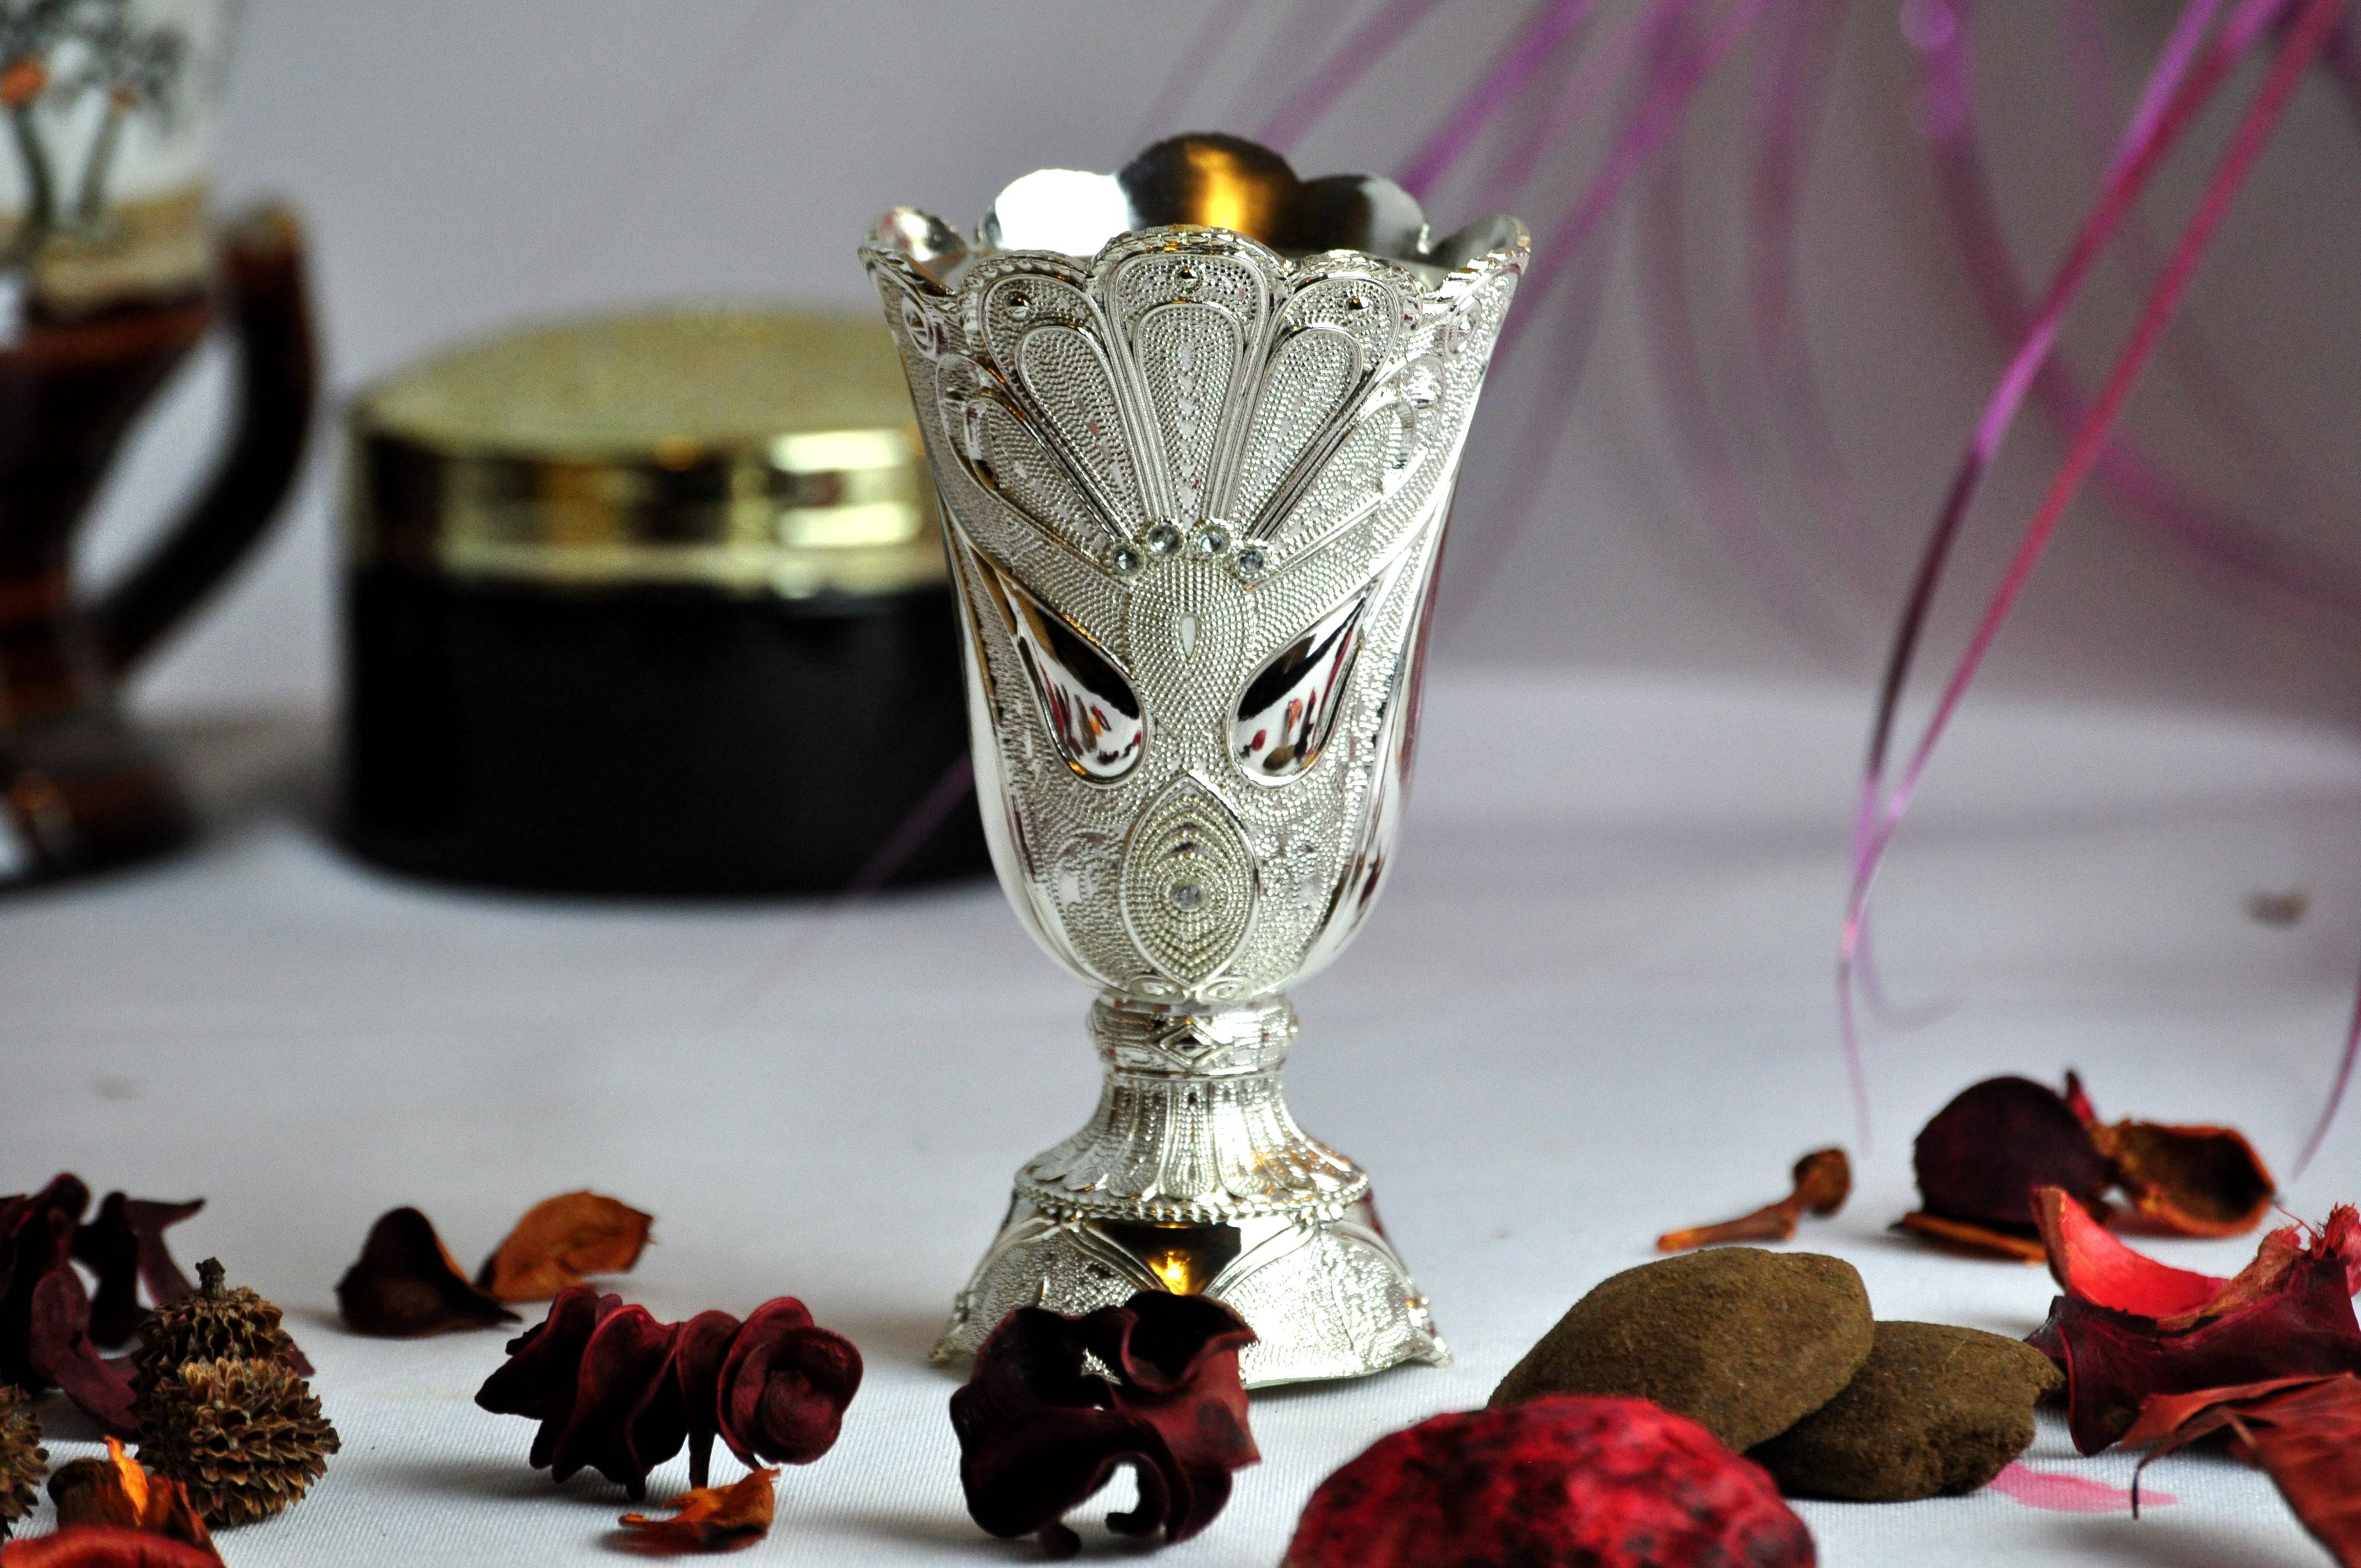 Arab Incense Bakhoor Burner - 5 inch Silver by Intense Oud - Intense oud